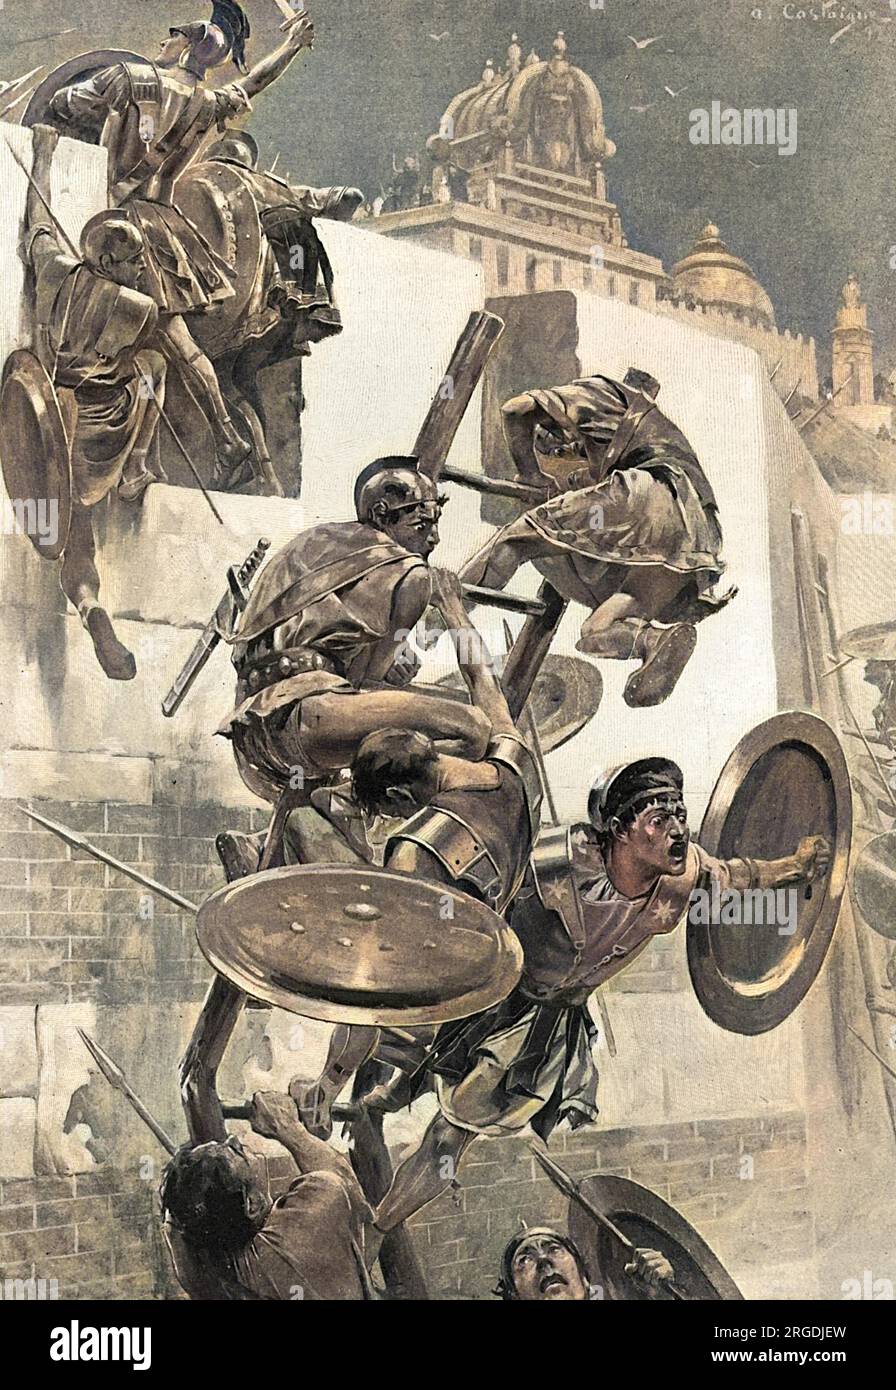 Soldaten, die von Alexander dem Großen begeistert waren, schwärmen eine Leiter hoch, um die befestigten Stadtmauern der Mallianer anzugreifen. Die Leiter bricht unter ihrem Gewicht und lässt ihren Anführer offen für Angriffe auf die Stadtmauern, aber anstatt zurück in Sicherheit zu springen, kämpft Alexander weiter, in die Mitte der Feinde: Ein Beispiel für seine Tapferkeit und Eile. Stockfoto